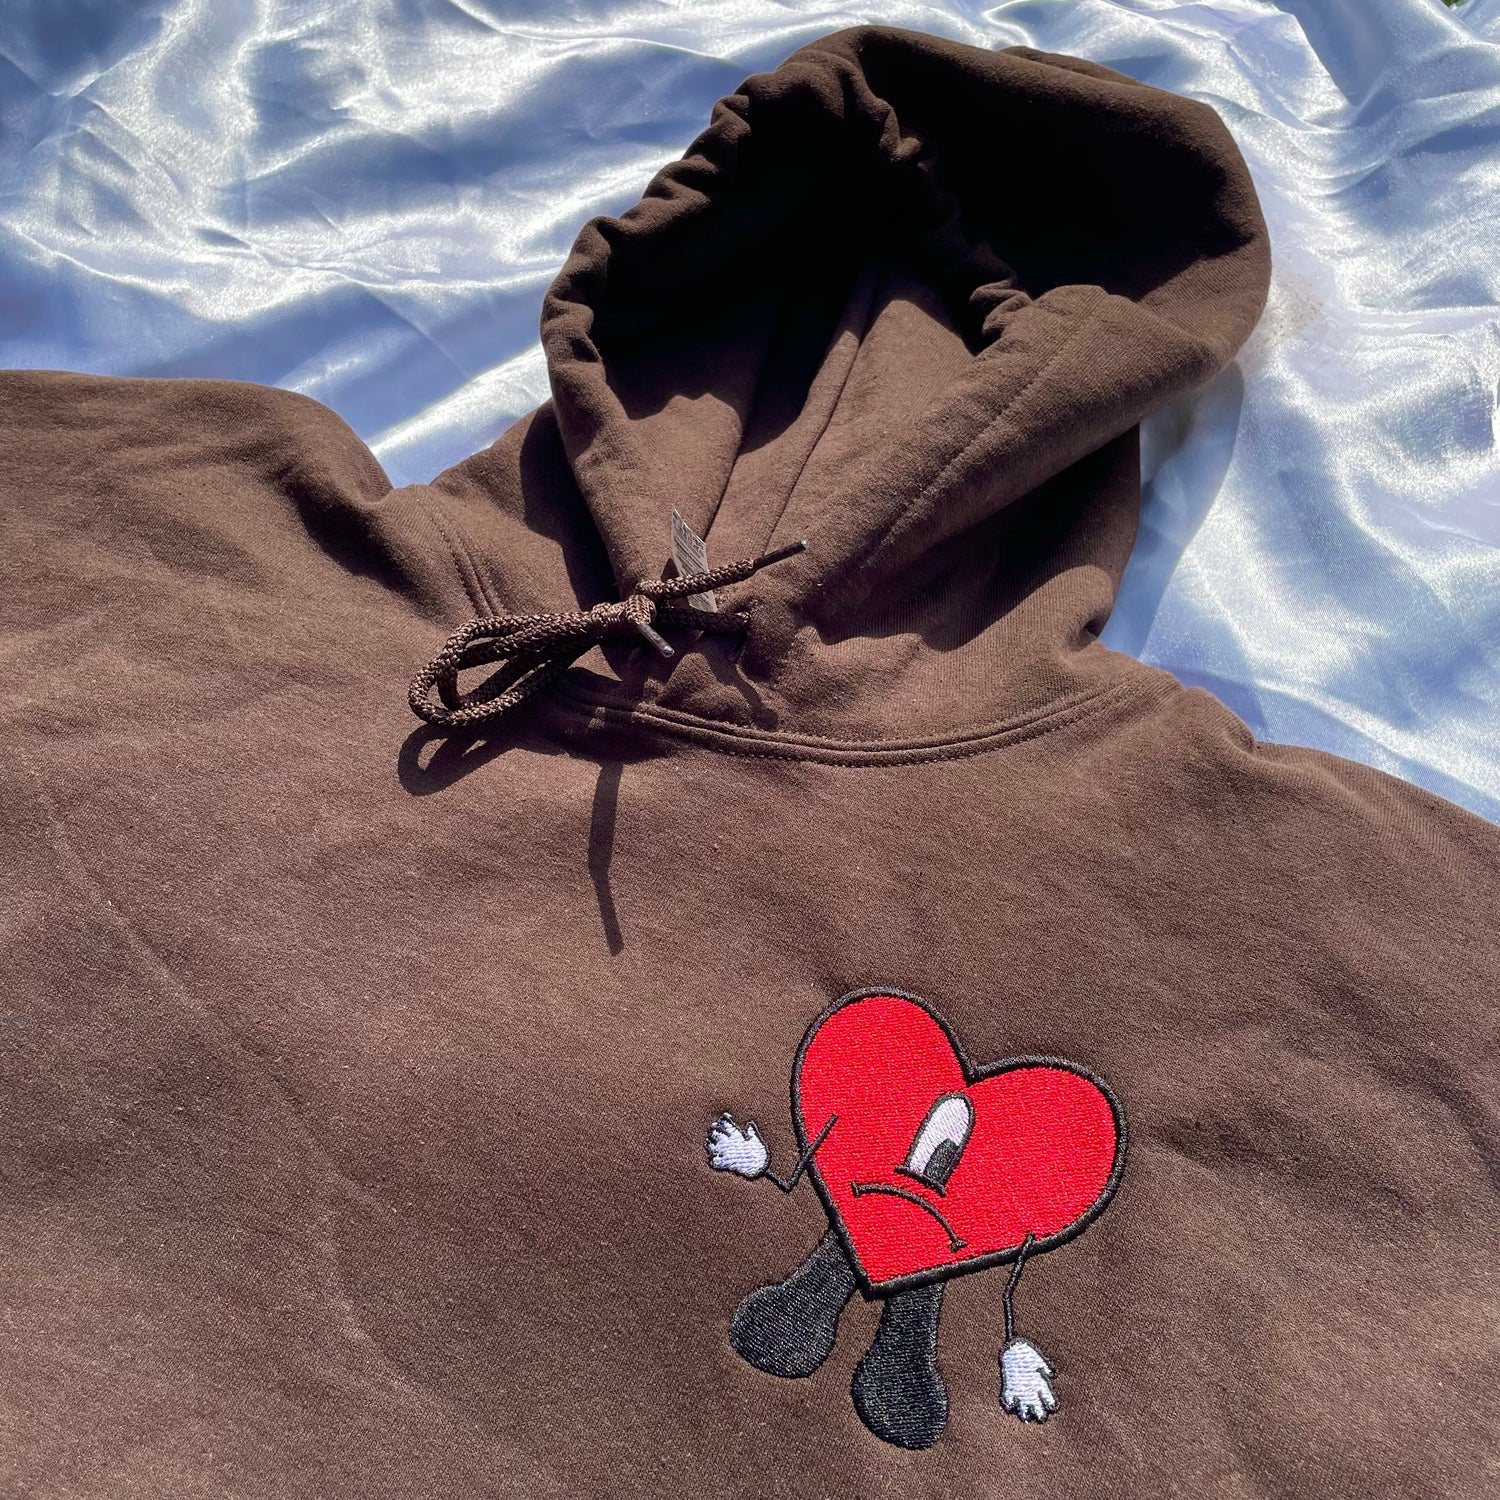 Sad Heart Dodgers Sweatshirt Bad Bunny